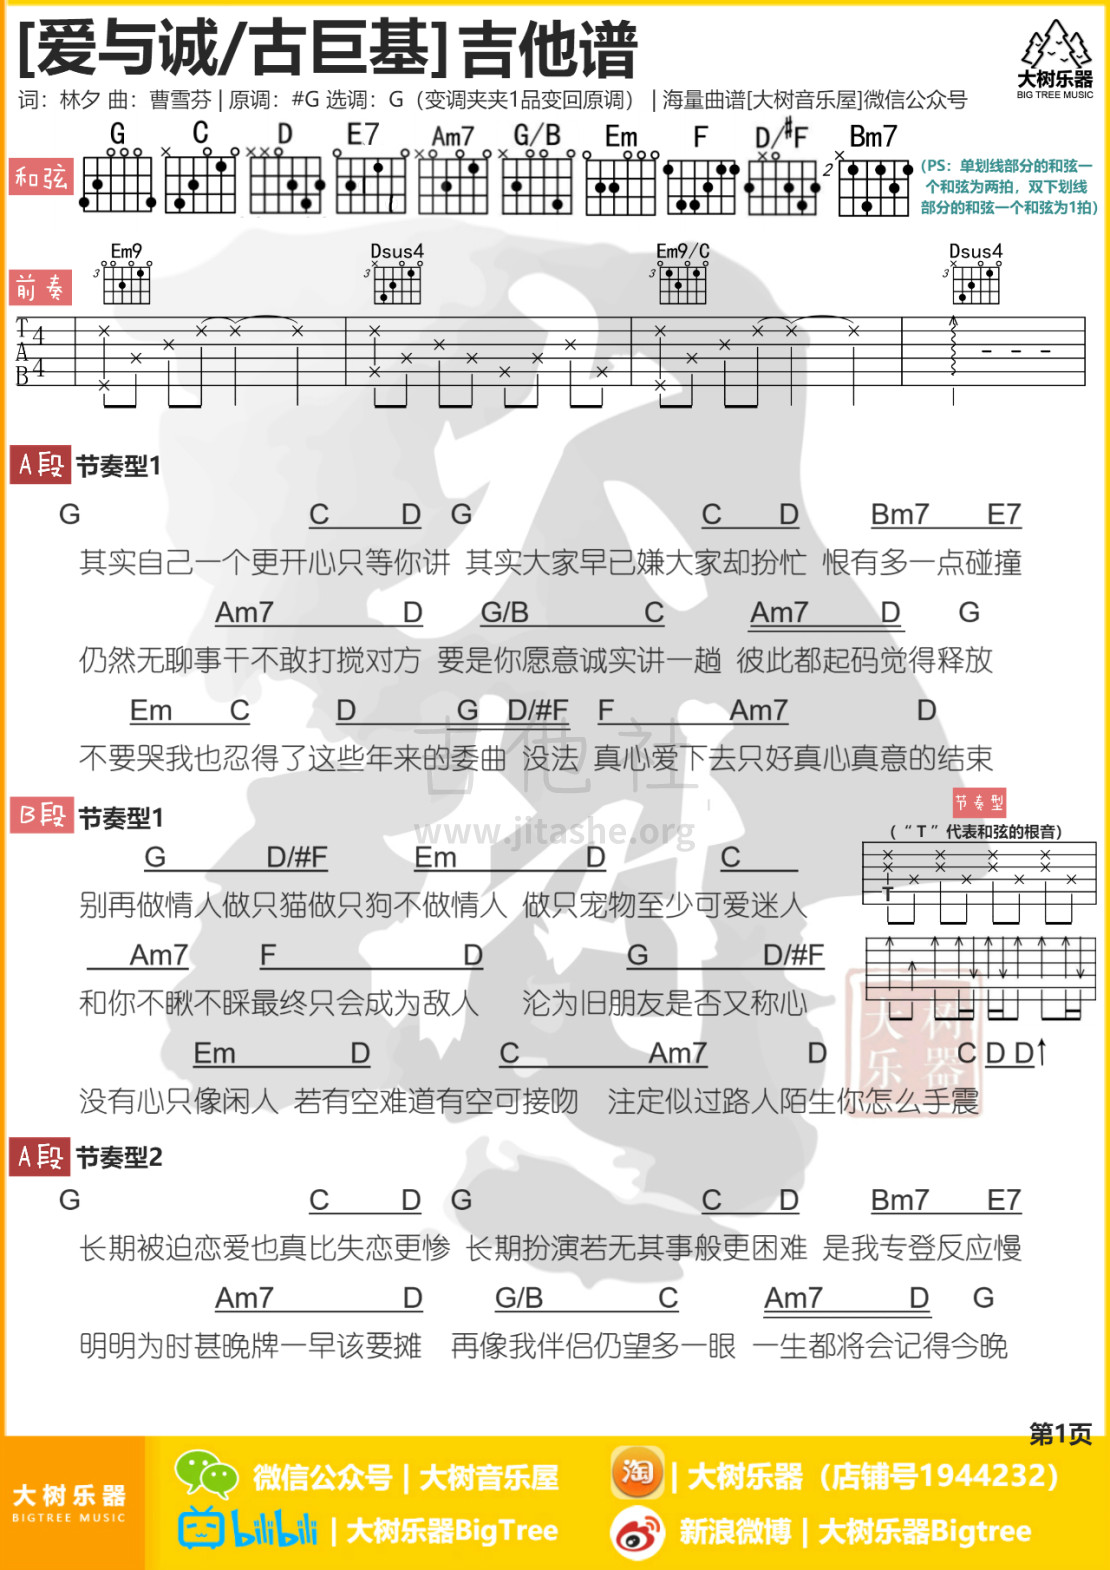 打印:爱与诚（大树音乐屋 大树乐器）吉他谱_古巨基(Ku Kui Kei;Leo)_1.jpg